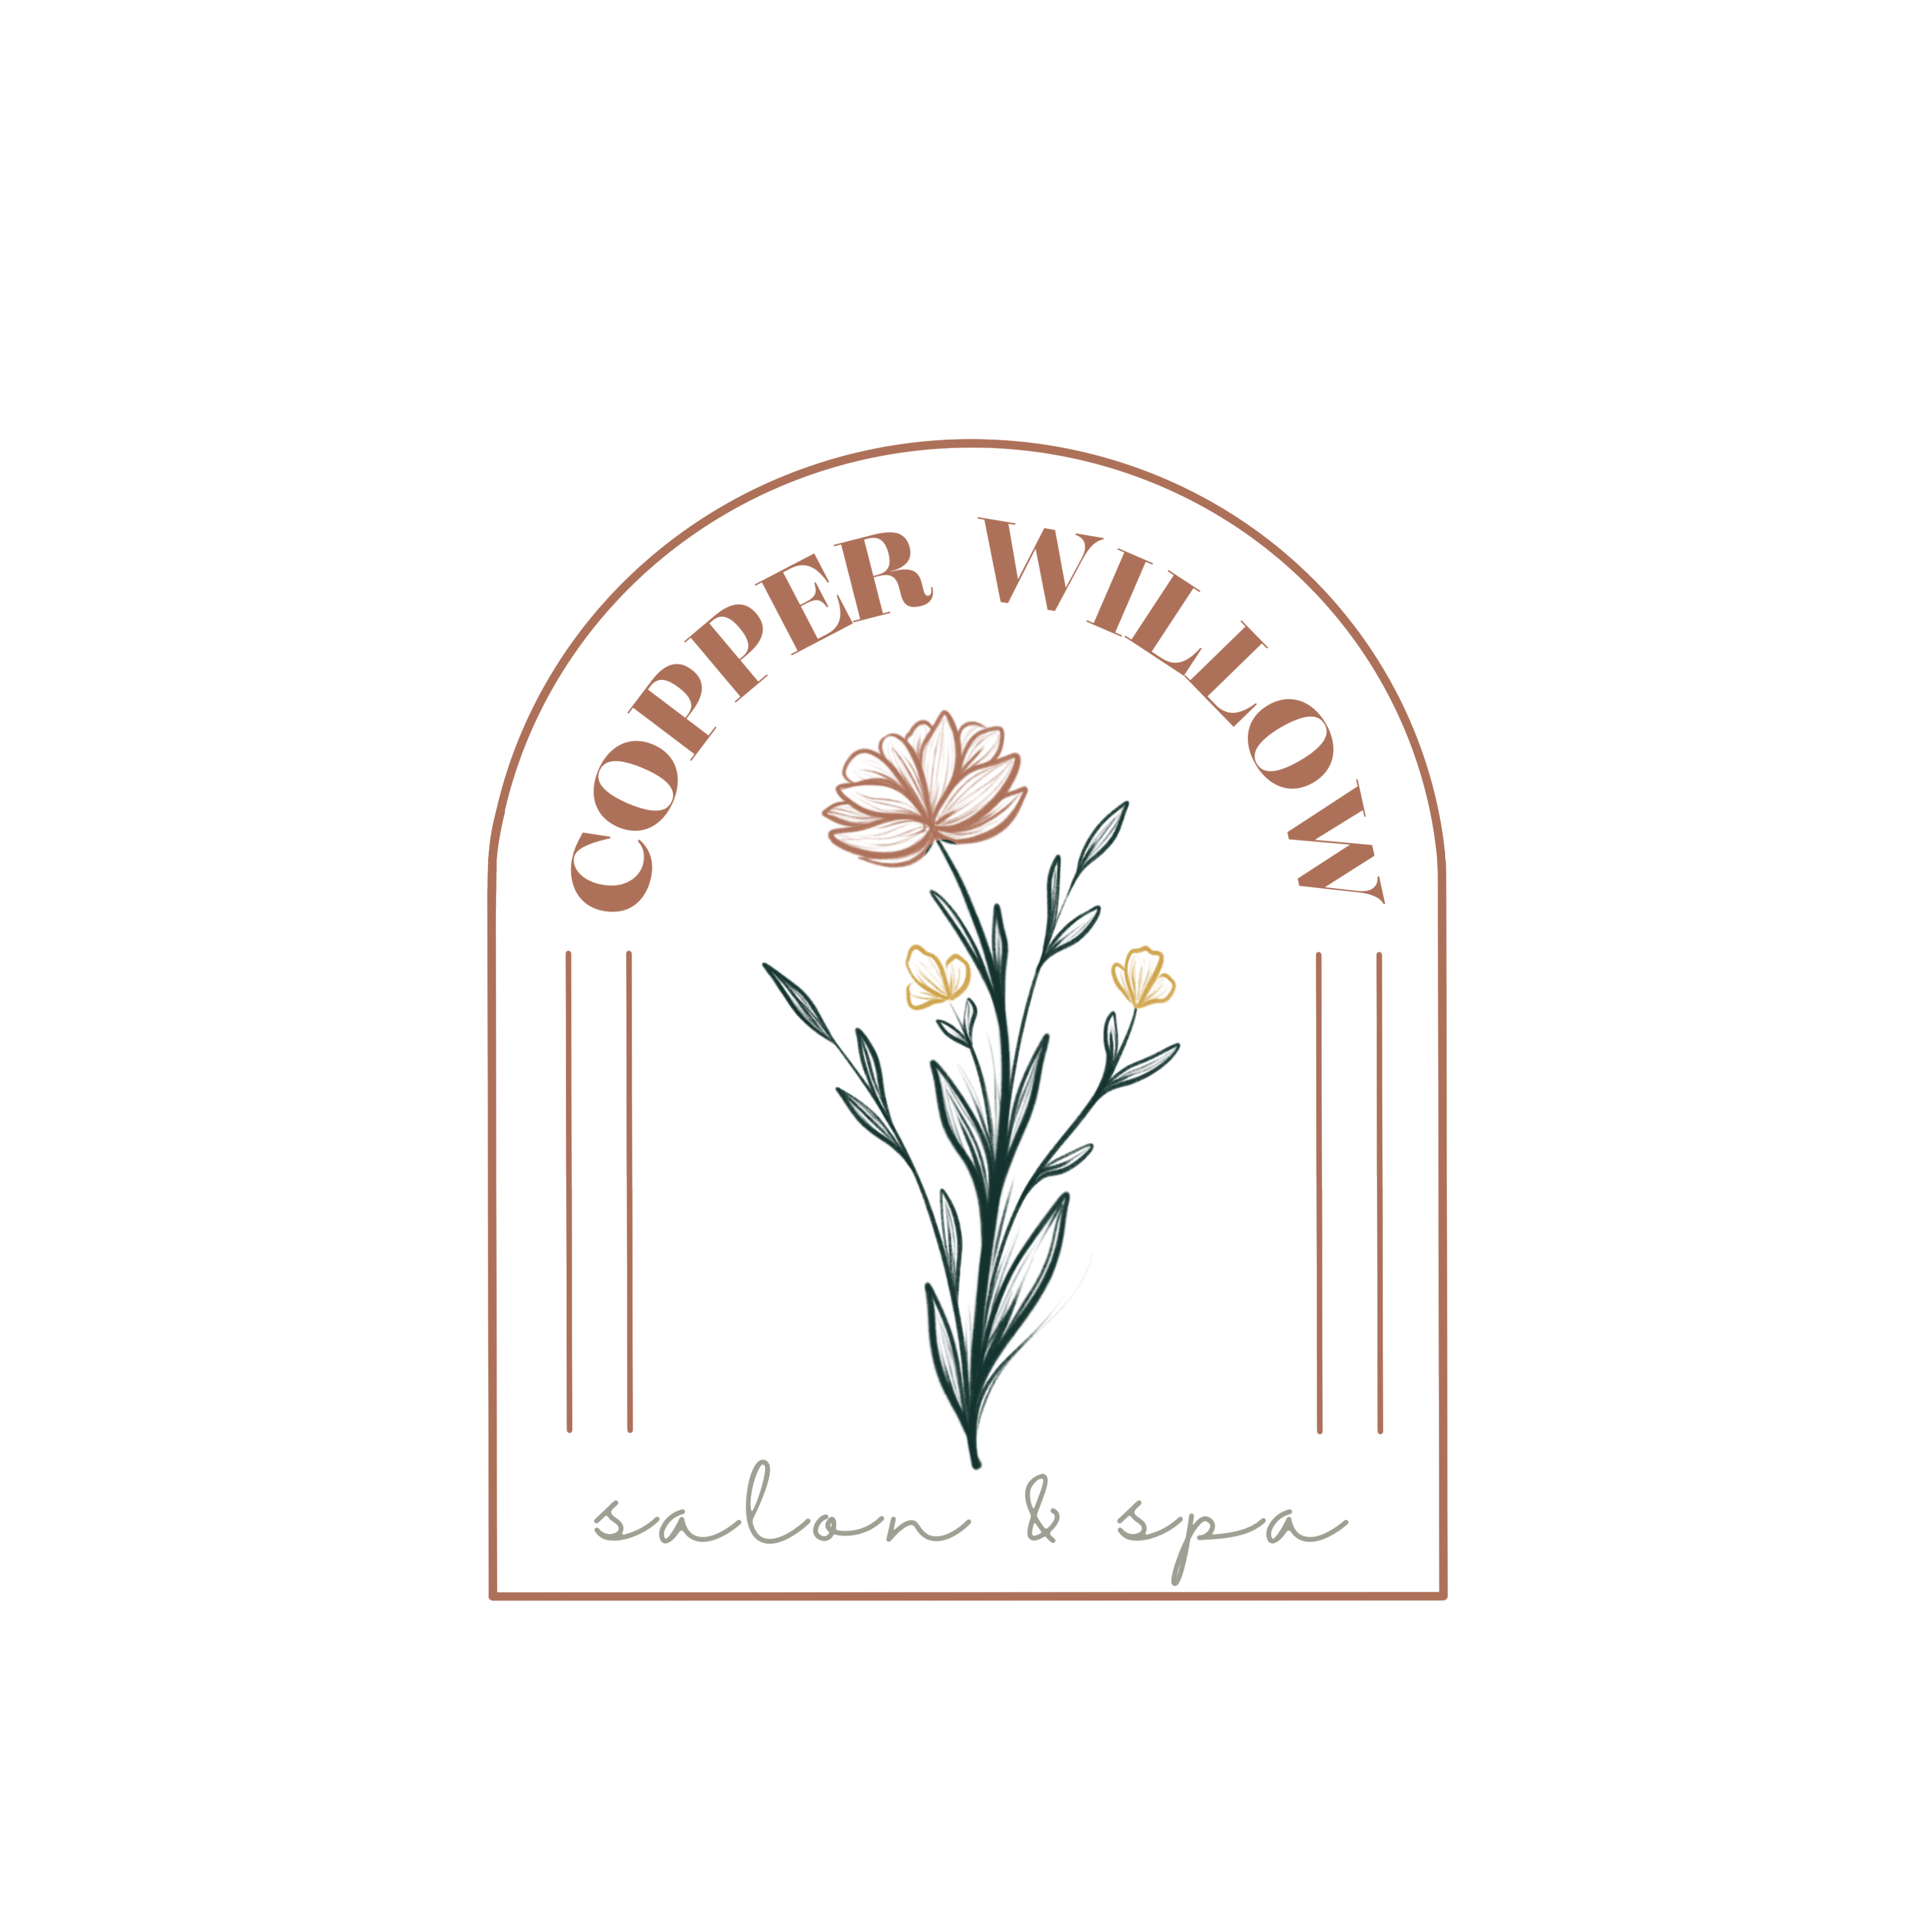 Copper Willow Salon